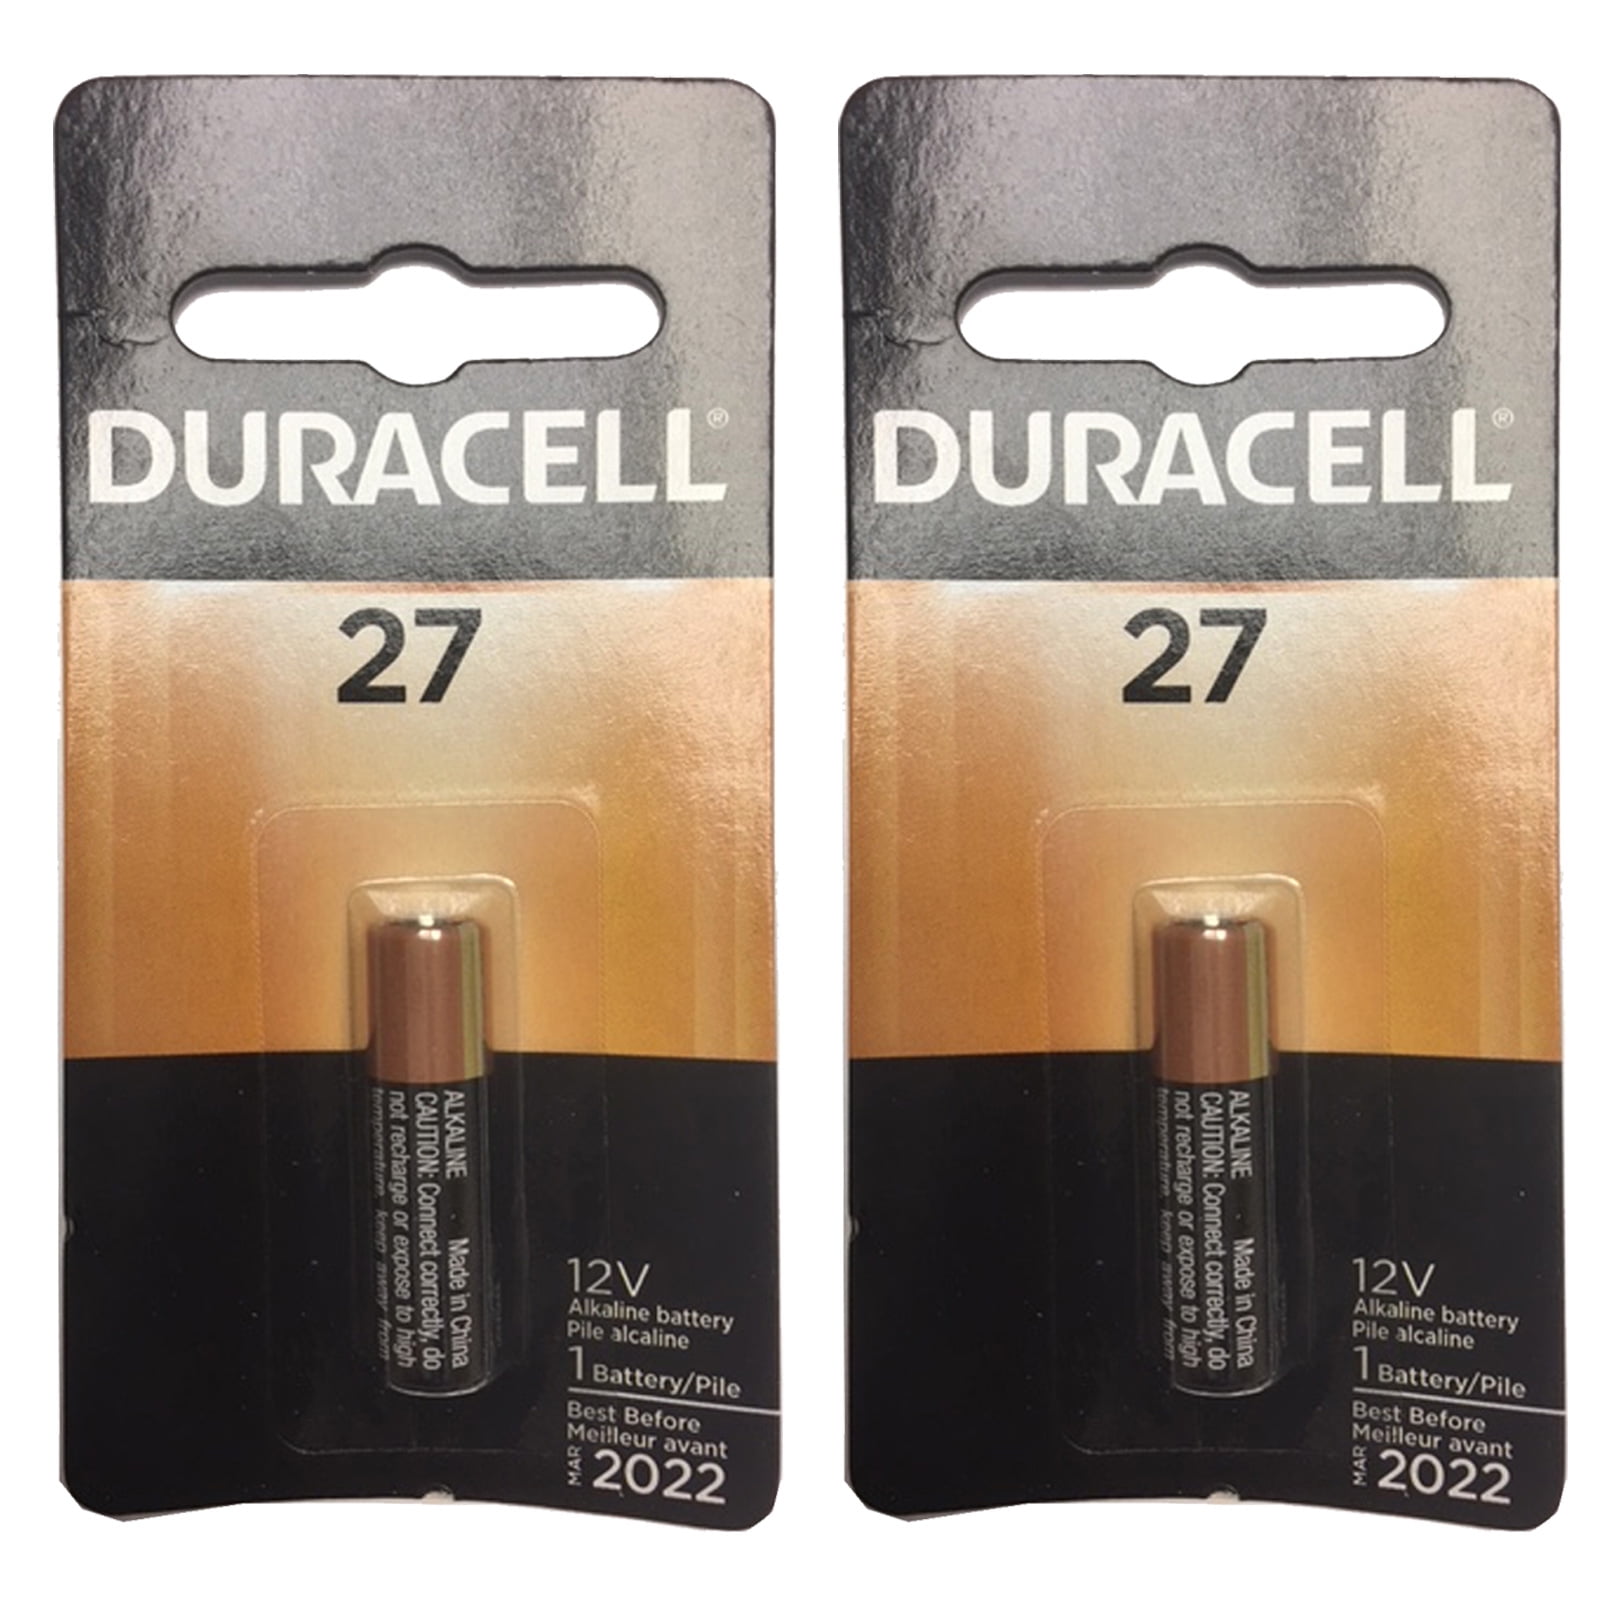 2x Duracell MN27 Alkaline 12V Battery G27A, A27, GP27A Key